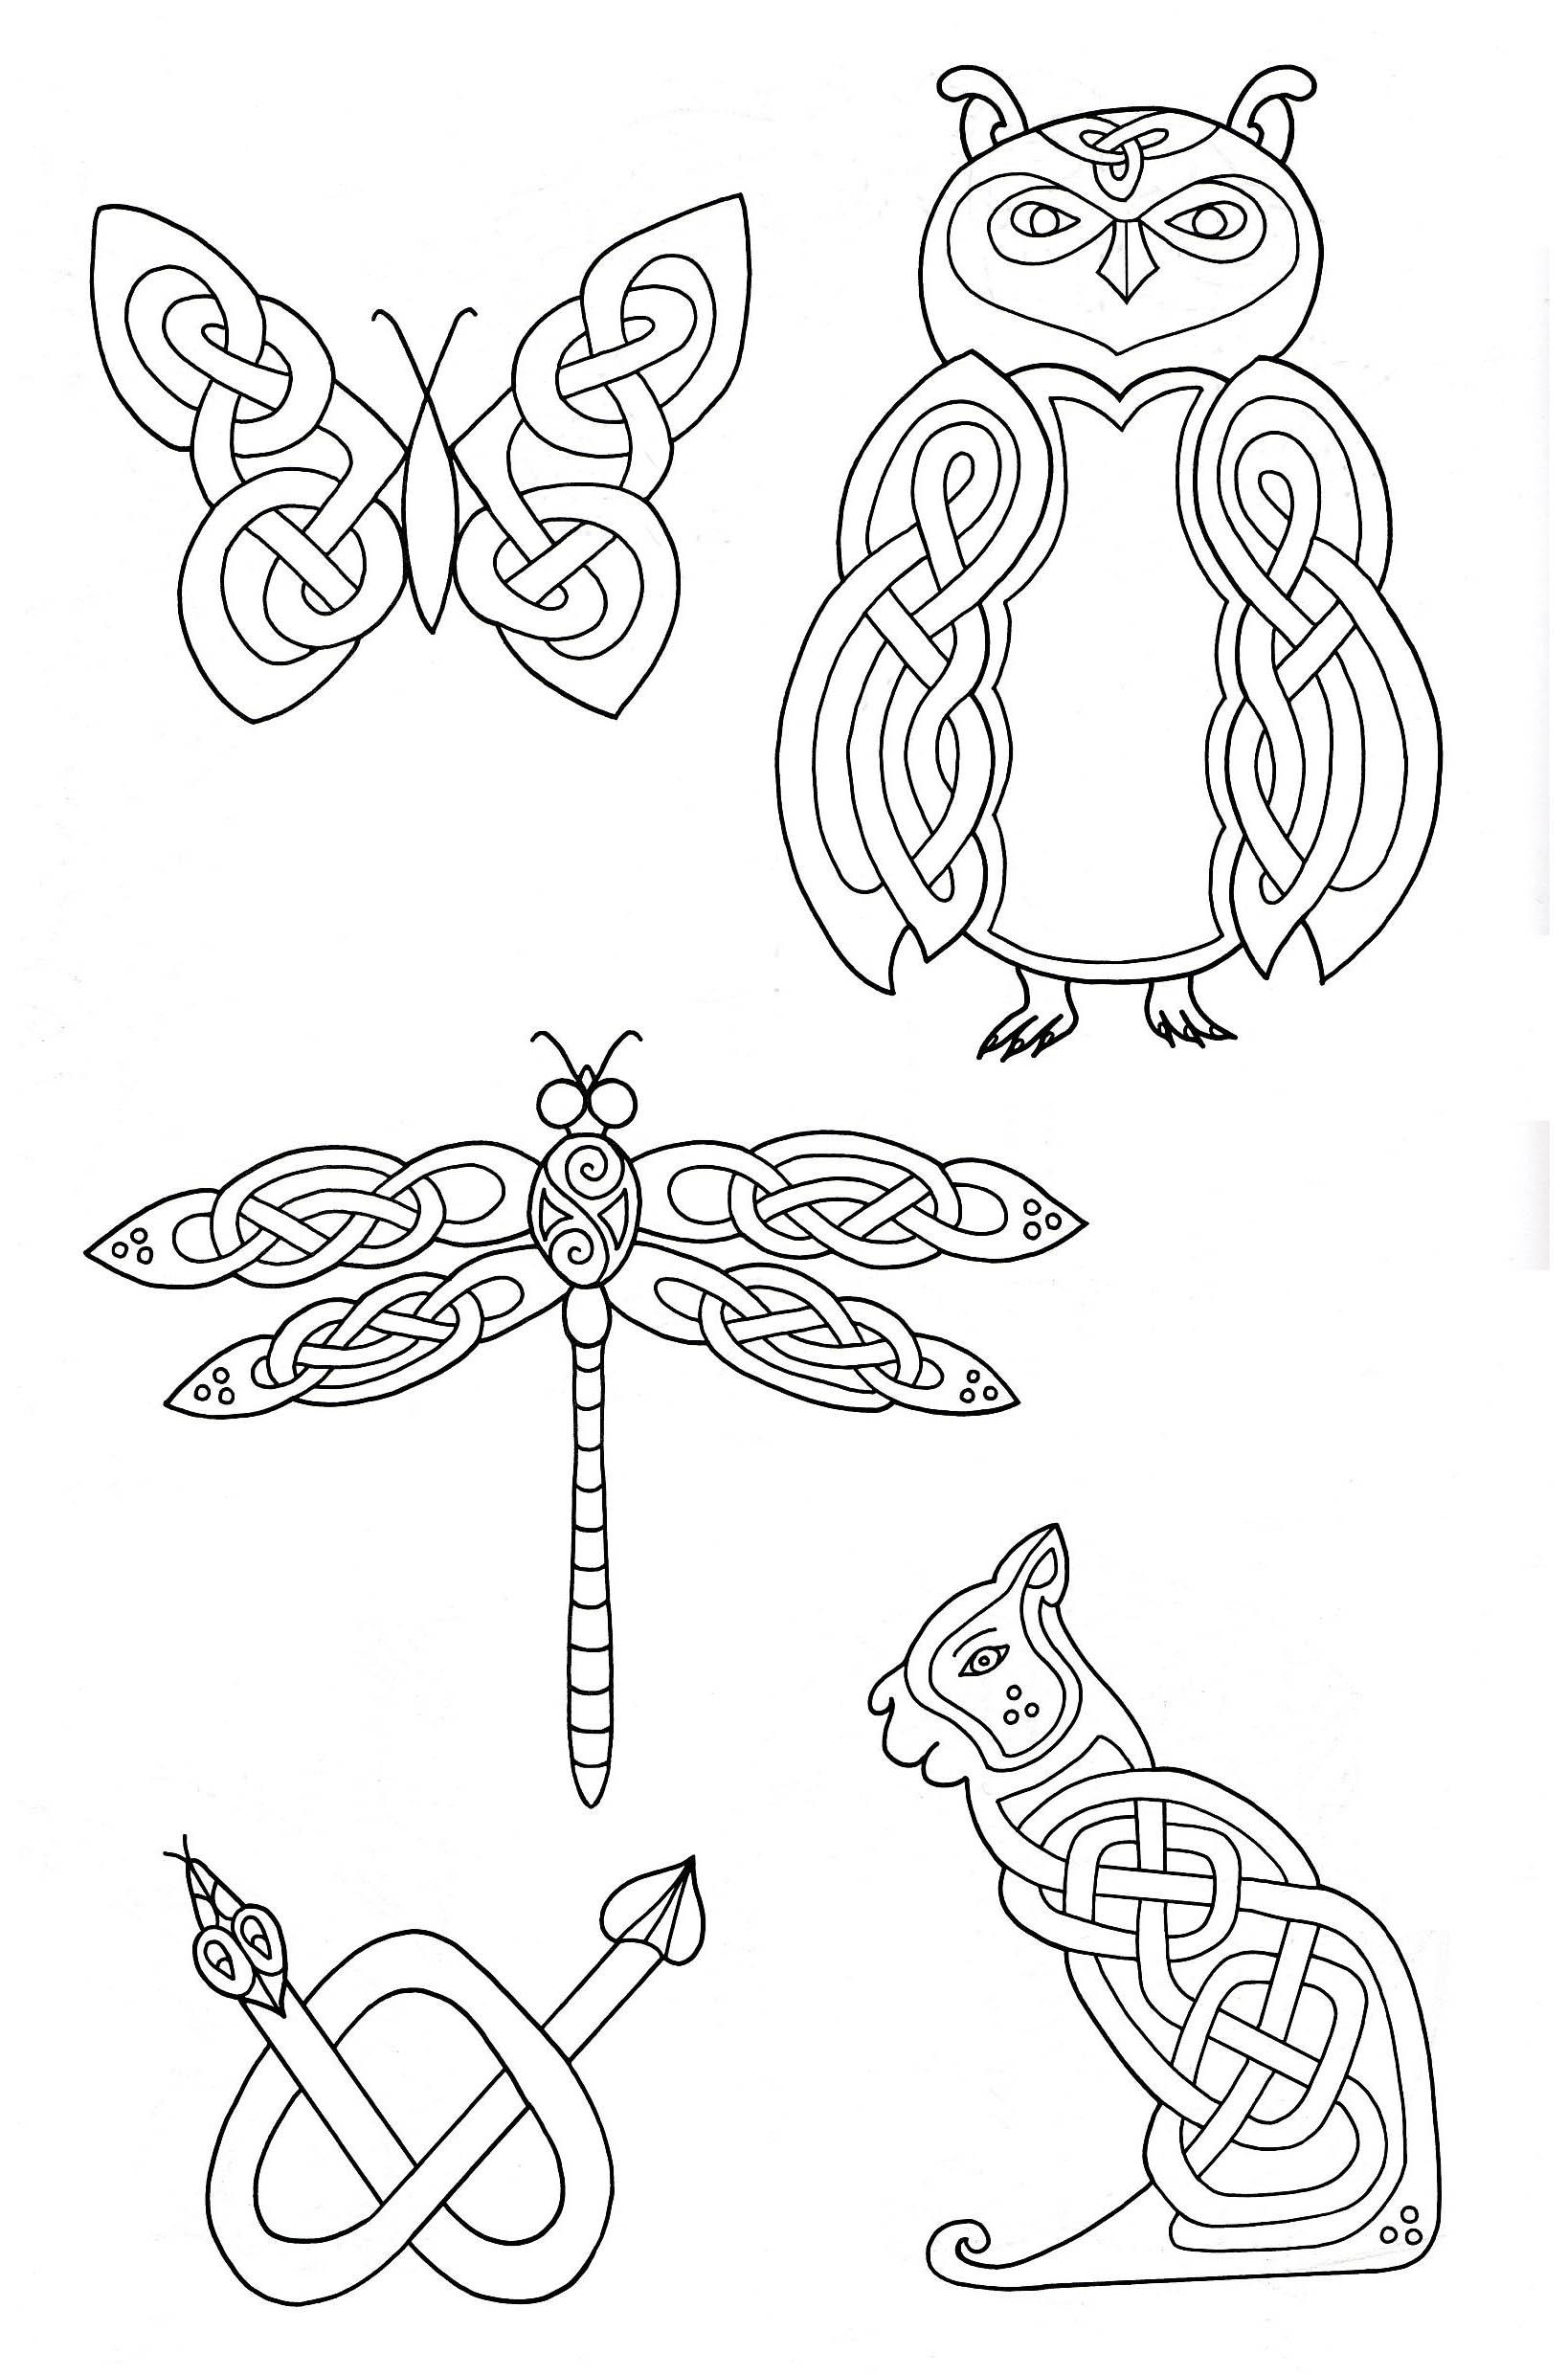 5 animaux dessinés avec des éléments entrelacés